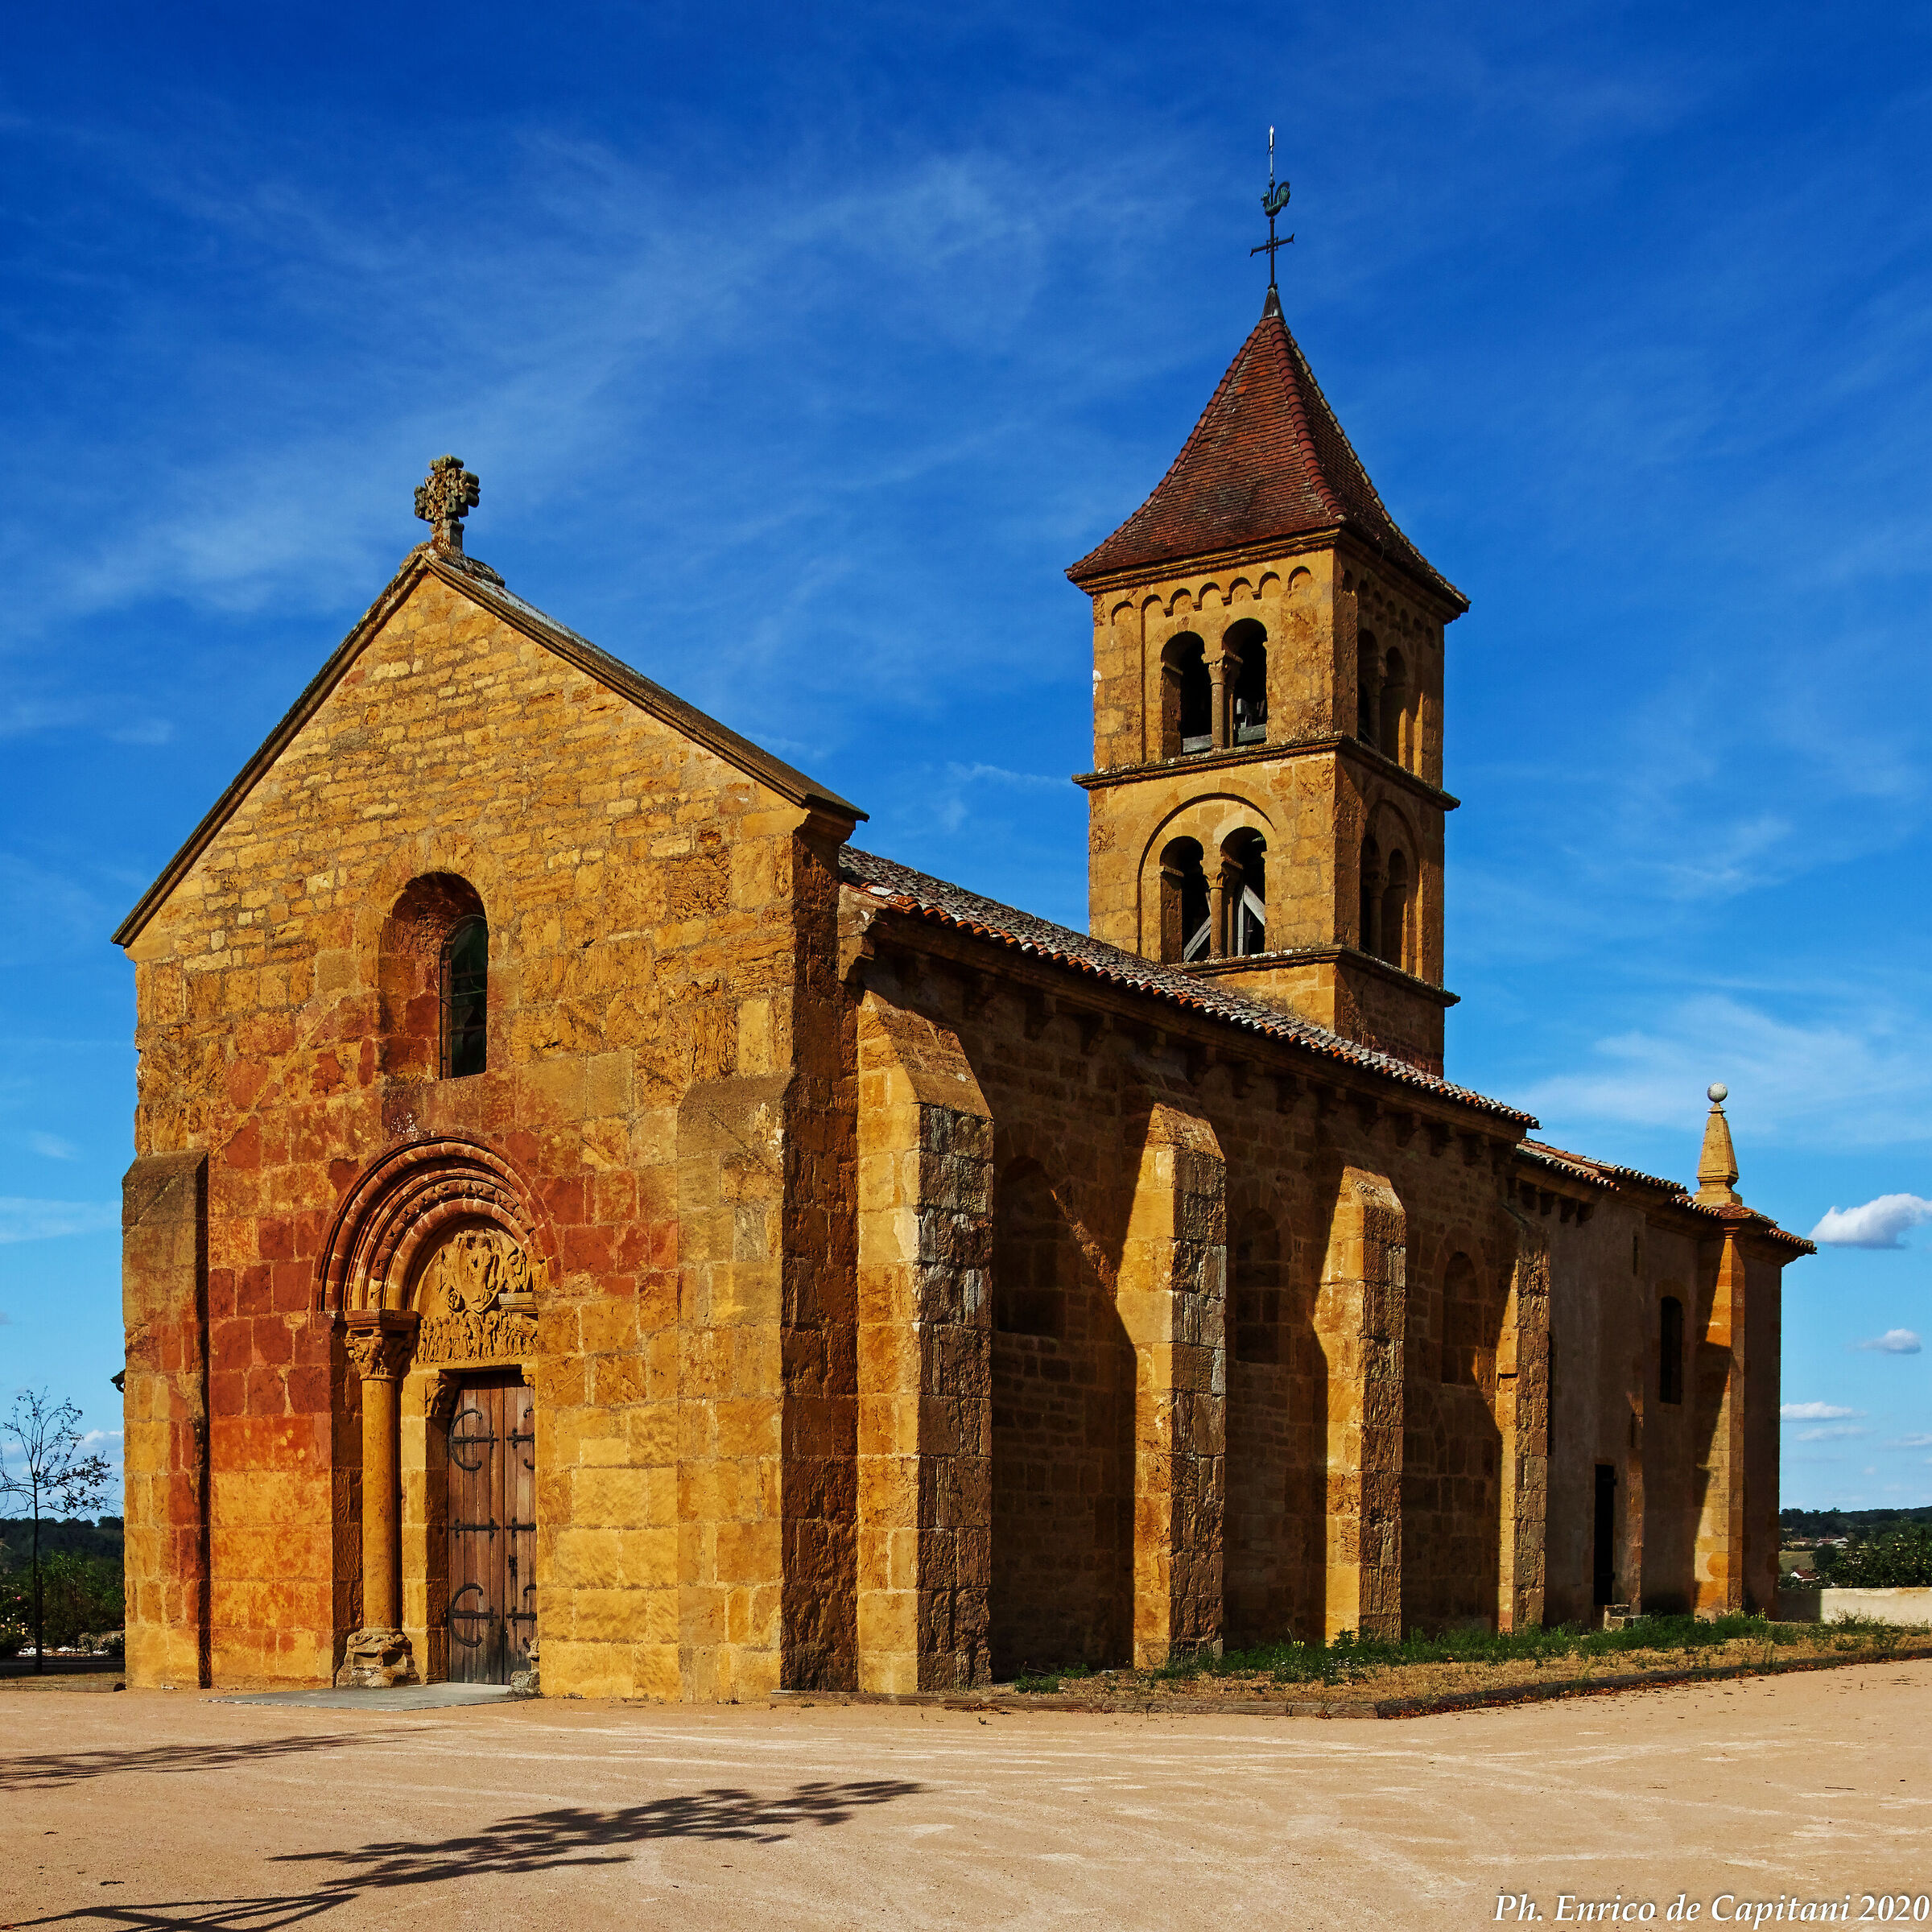 The Romanesque church of Montceaux-l'Etoile...